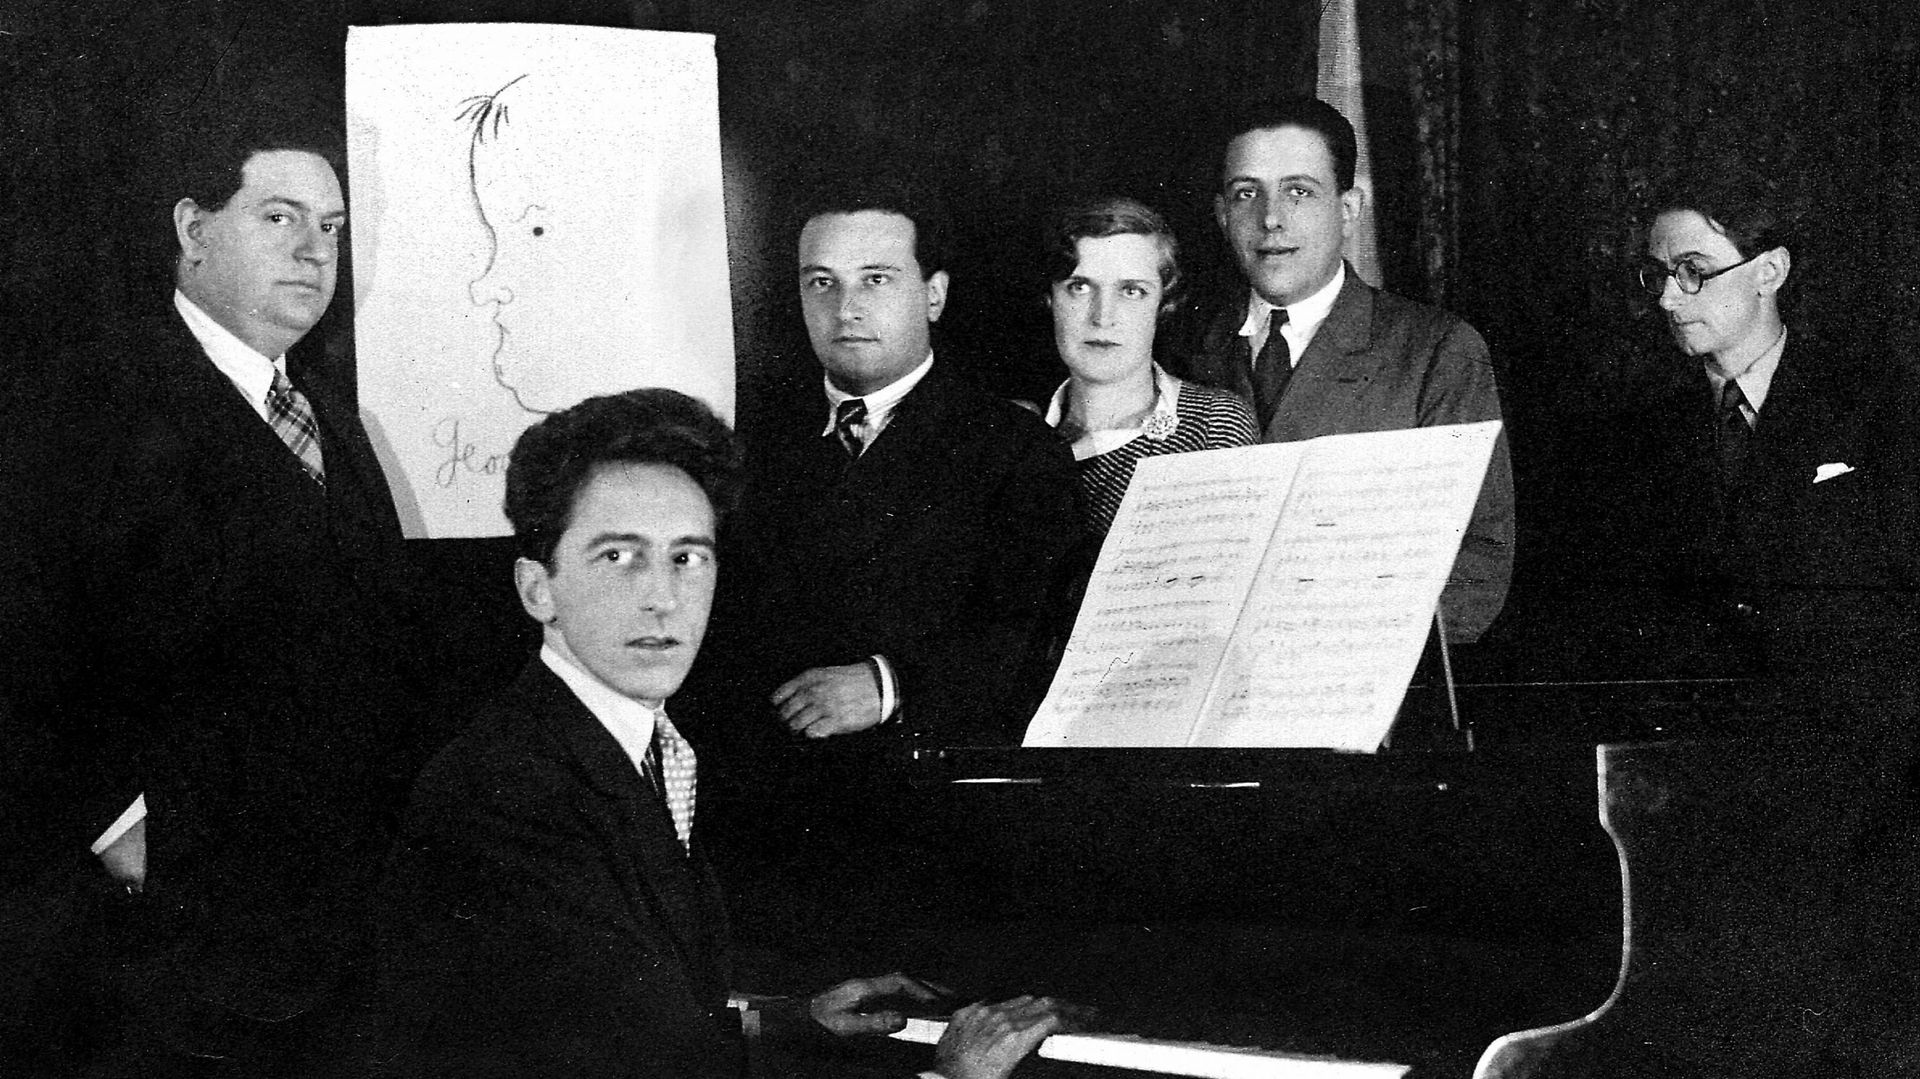 Le groupe des six, 6 compositeurs français qui se positionnent contre l’impressionnisme et le wagnérisme